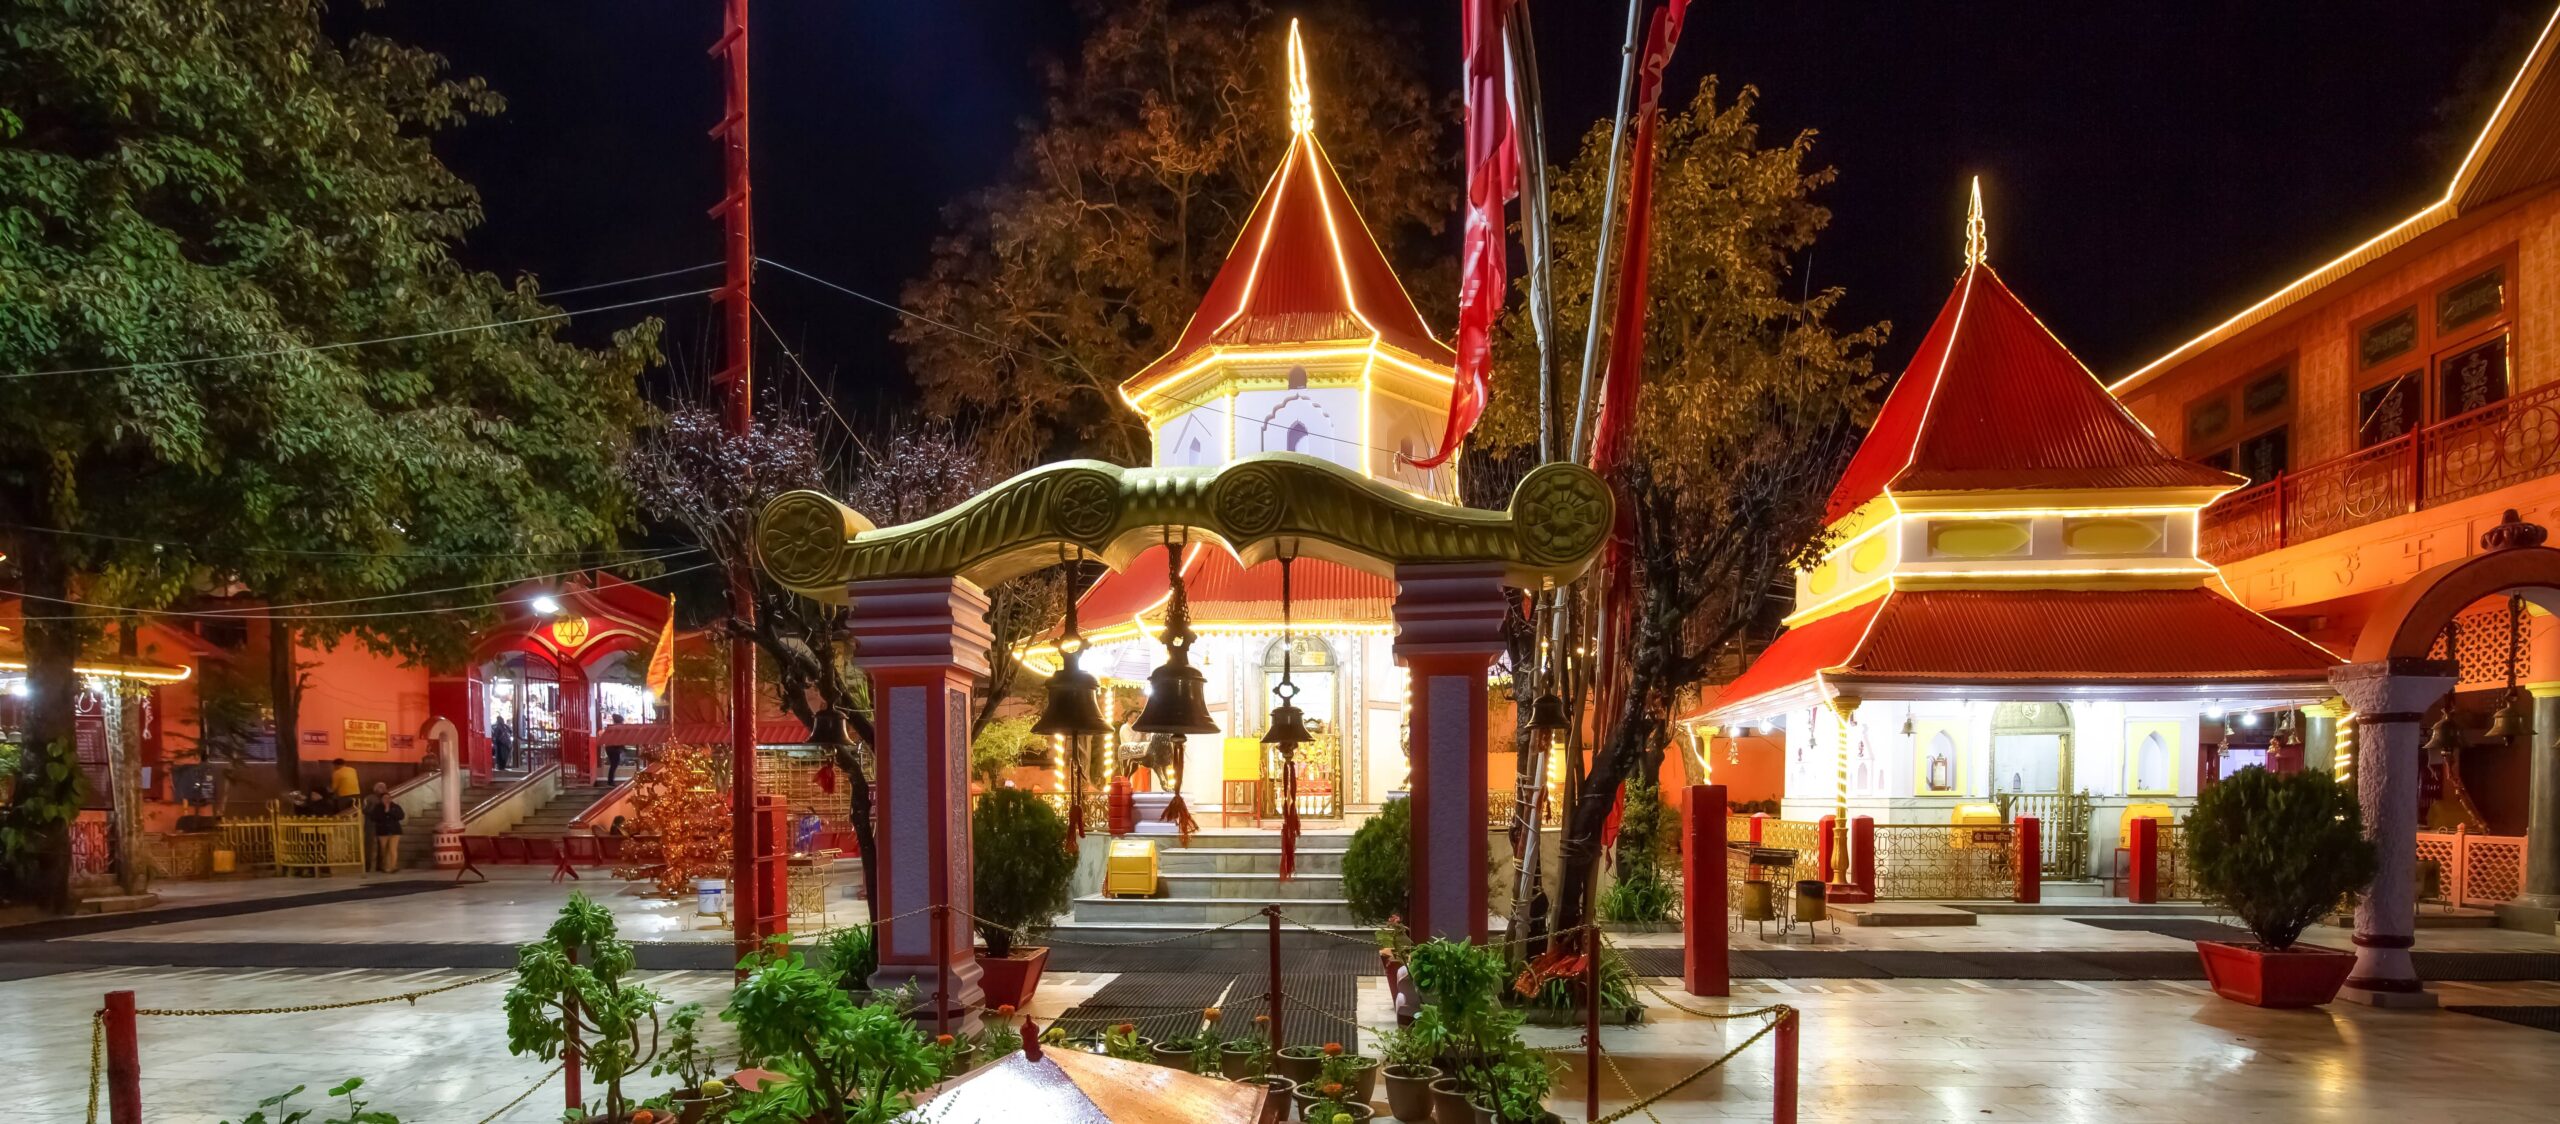 Naina Devi Temple Devbhoomi Uttarakhand